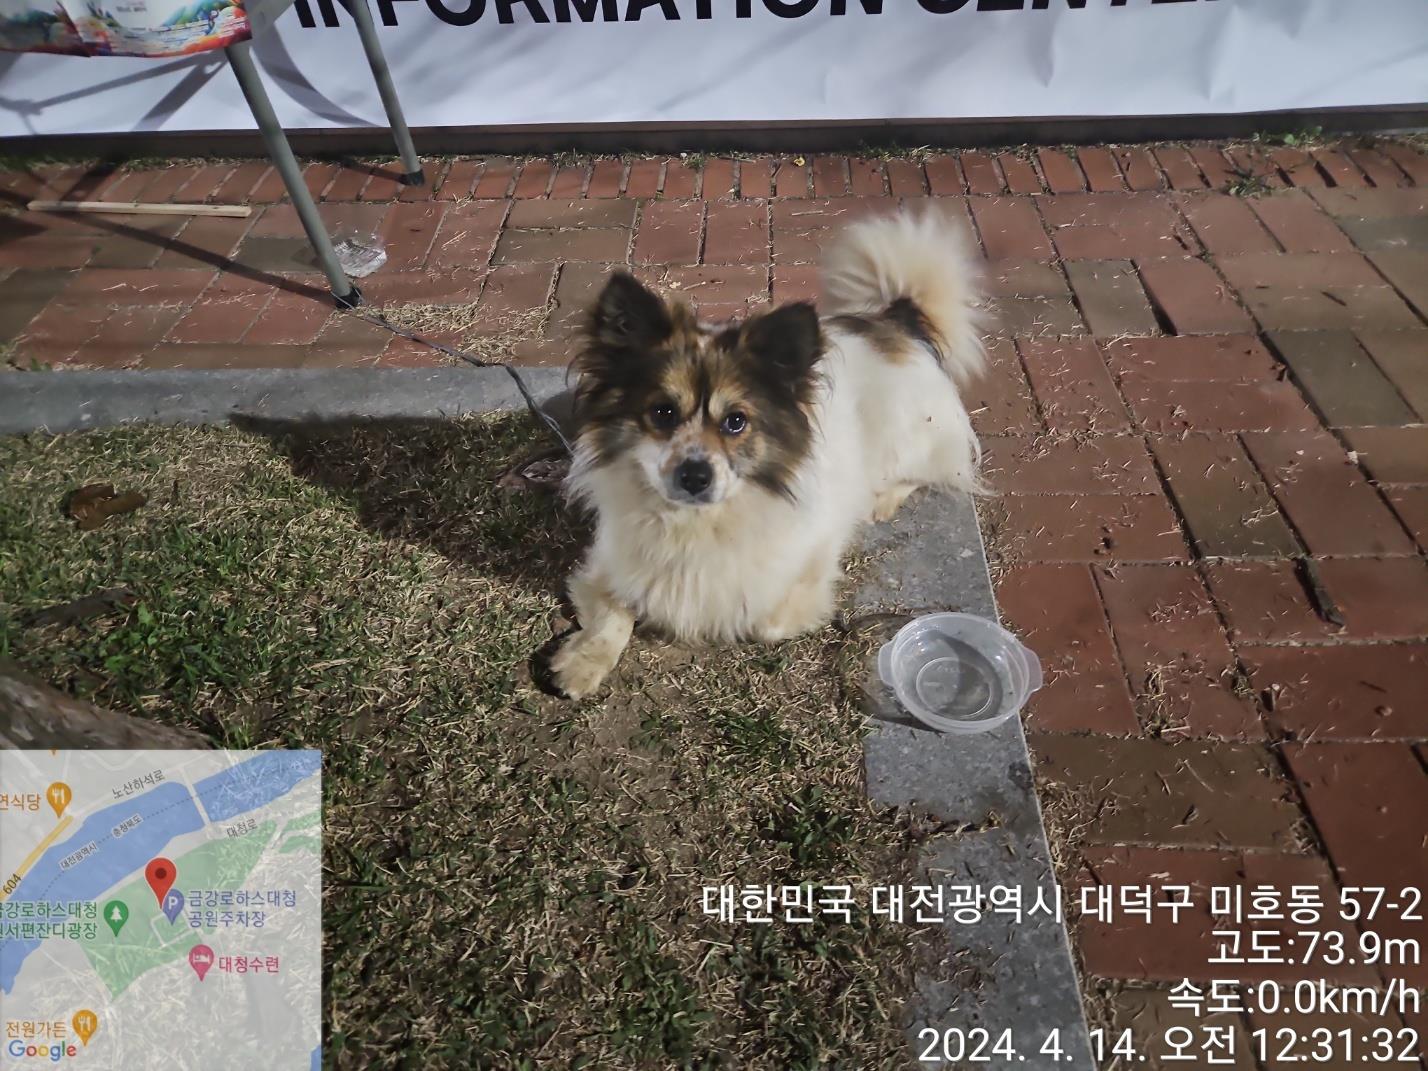 공고 번호가 대전-대덕-2024-00069인 믹스견 동물 사진